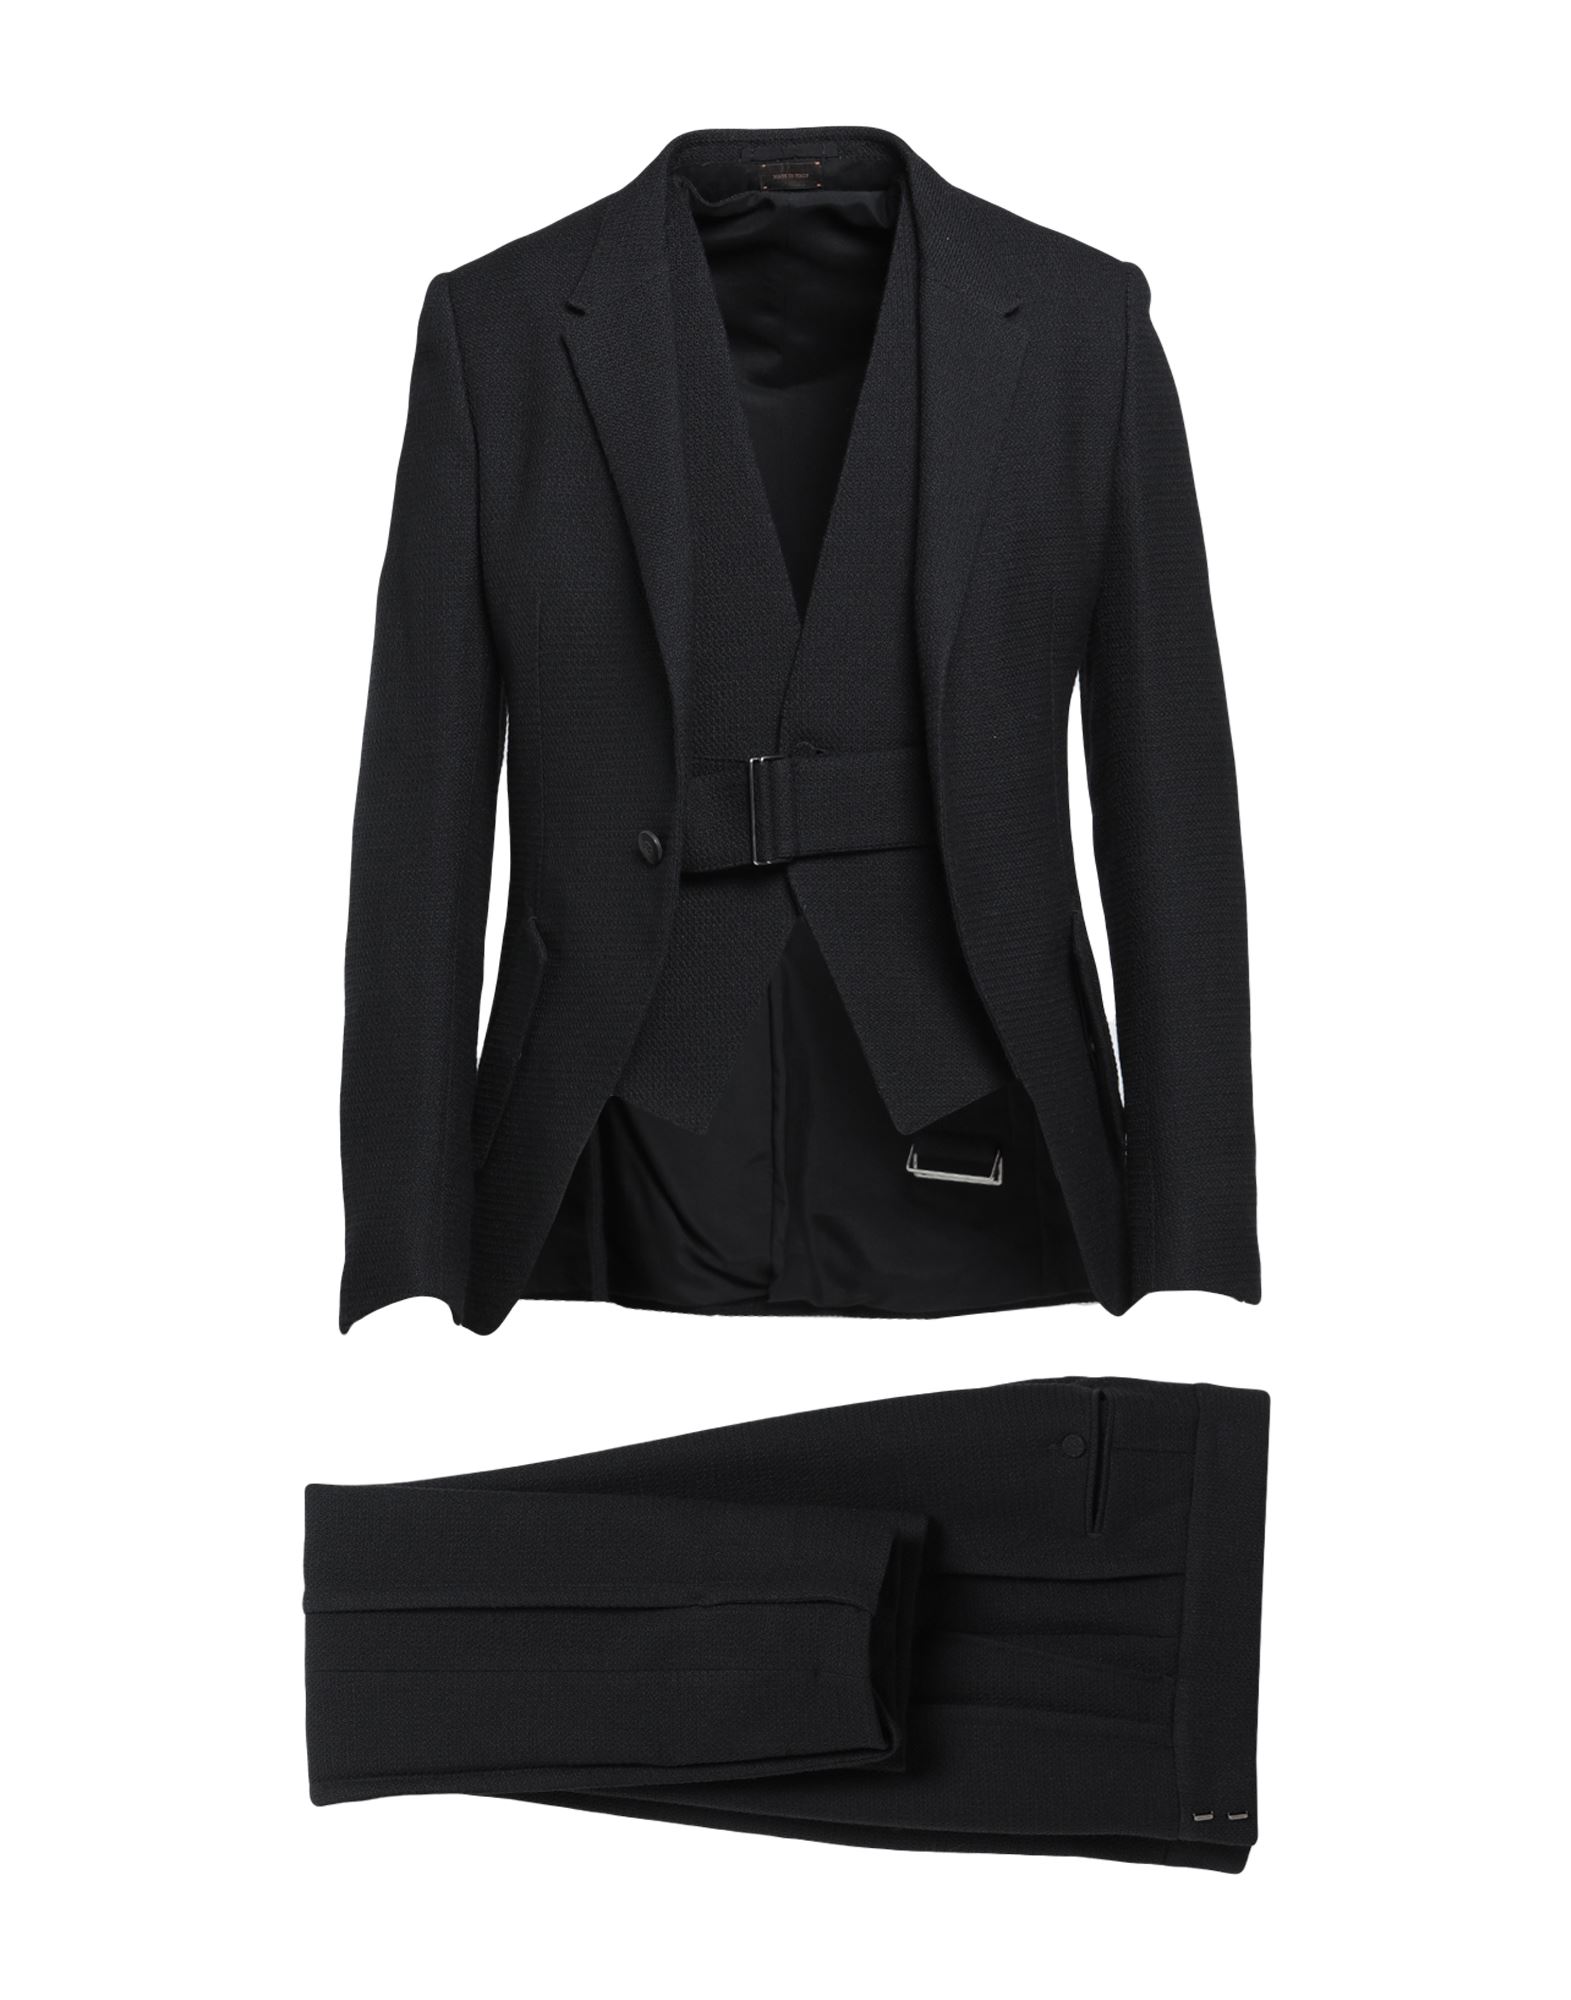 ZEGNA Suits | Smart Closet